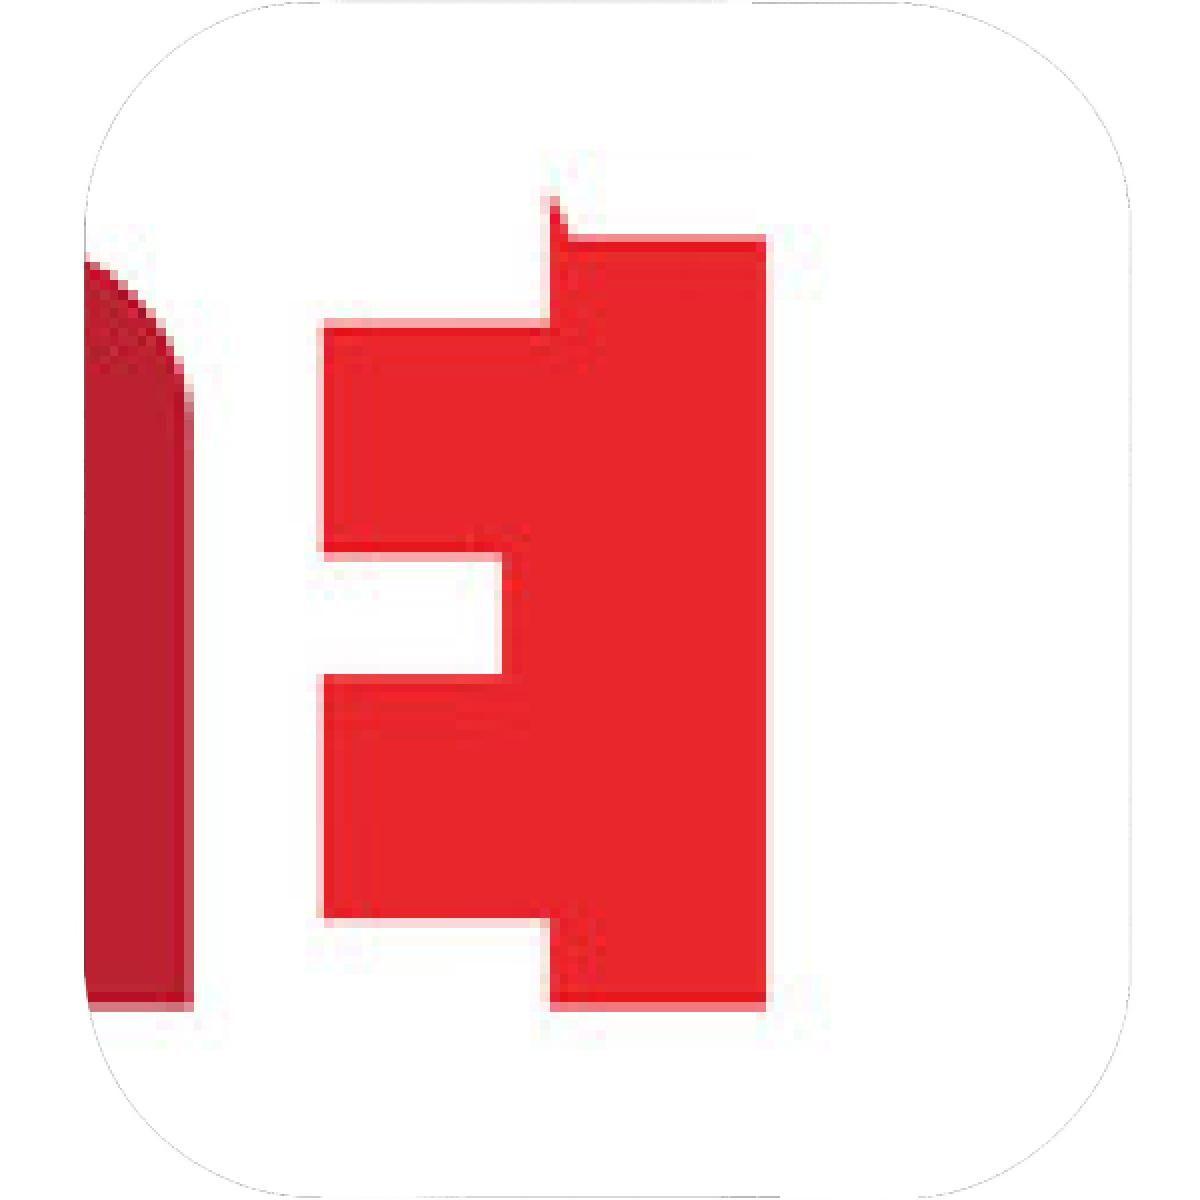 Red Square Company Logo - Designs